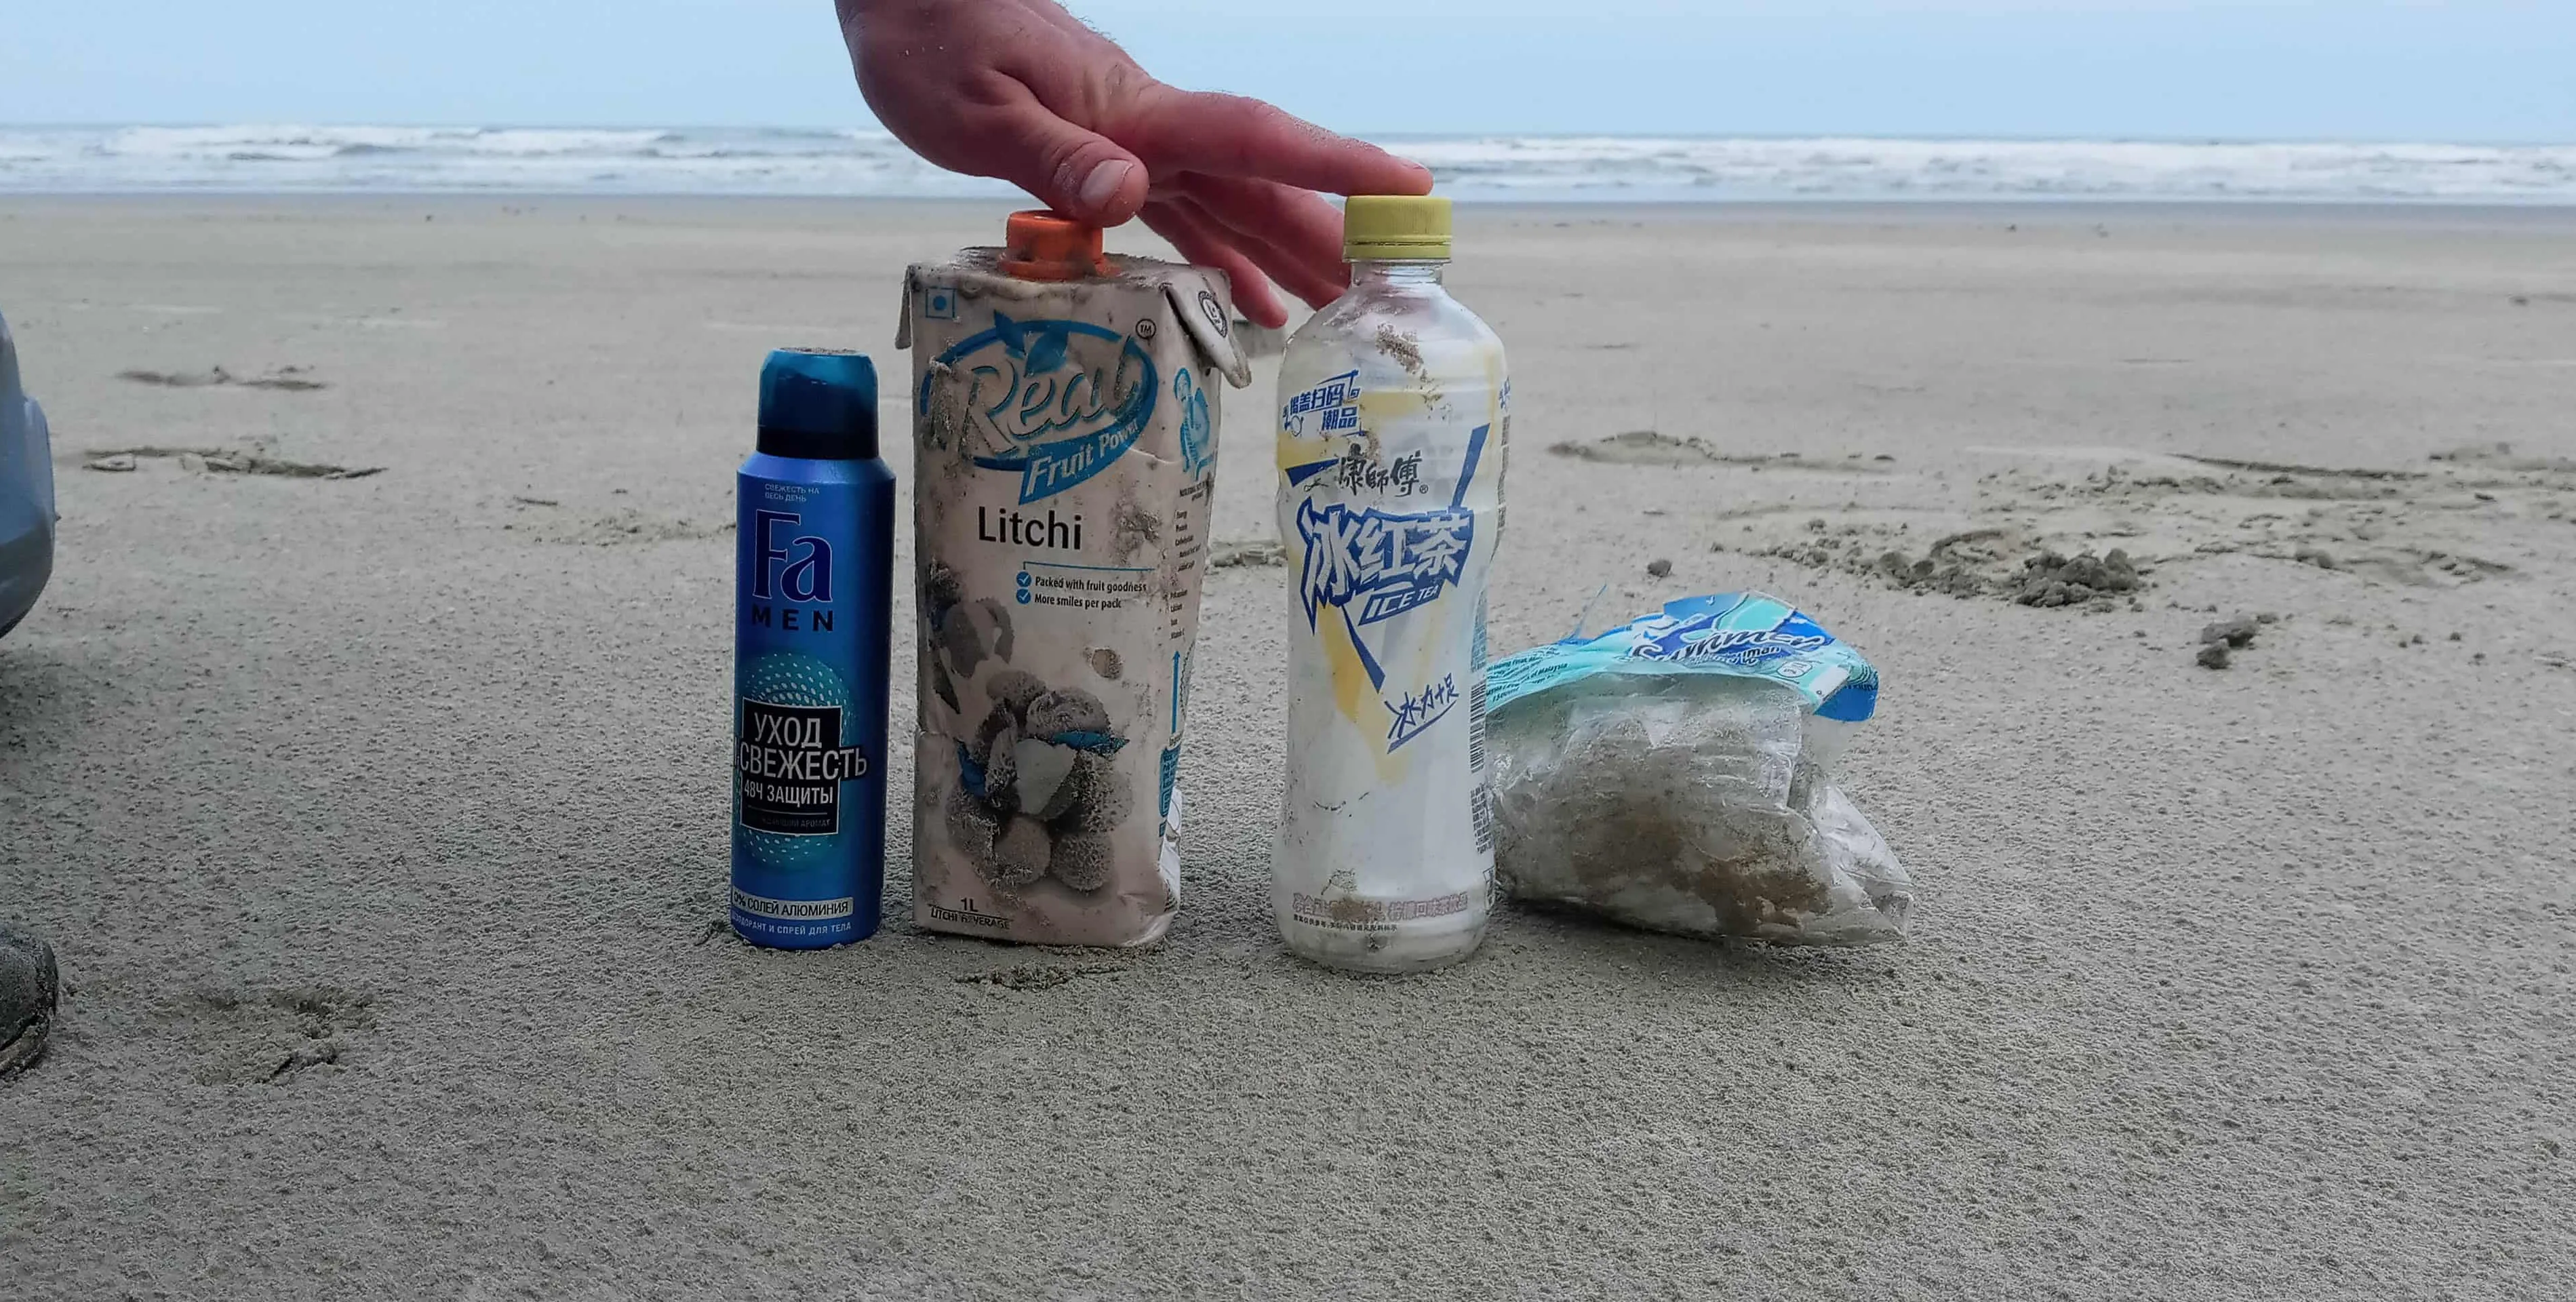  Quantidade elevada de lixo 'gringo' foi encontrado em praias da região 